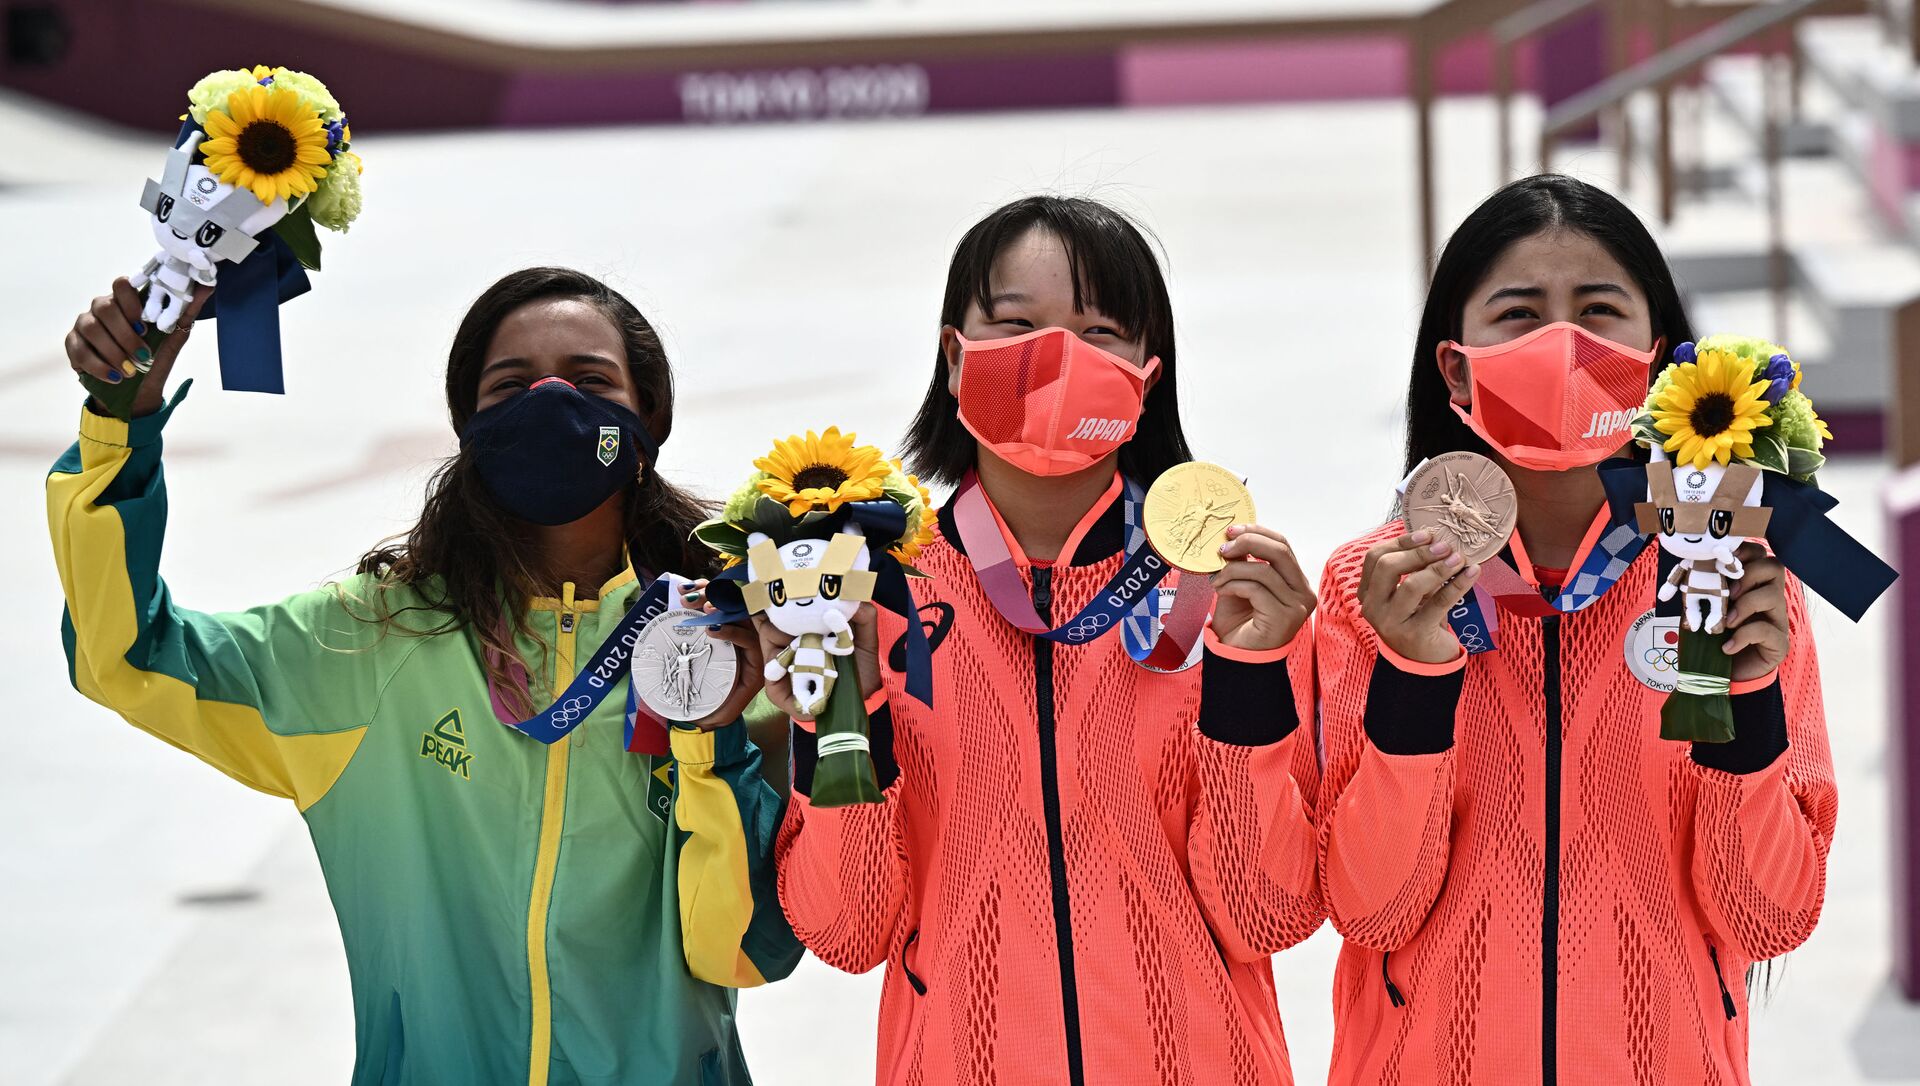 صورة تجمع البرازيلية رايسا ليال (فضية)، اليابانية موميجي نيشيا (ذهبية) واليابانية فونا ناكاياما (برونزية) خلال حفل تتويجهن بأولمبياد طوكيو لتزلج السيدات على اللوح 2020. في 26 يوليو 2021. - سبوتنيك عربي, 1920, 27.07.2021